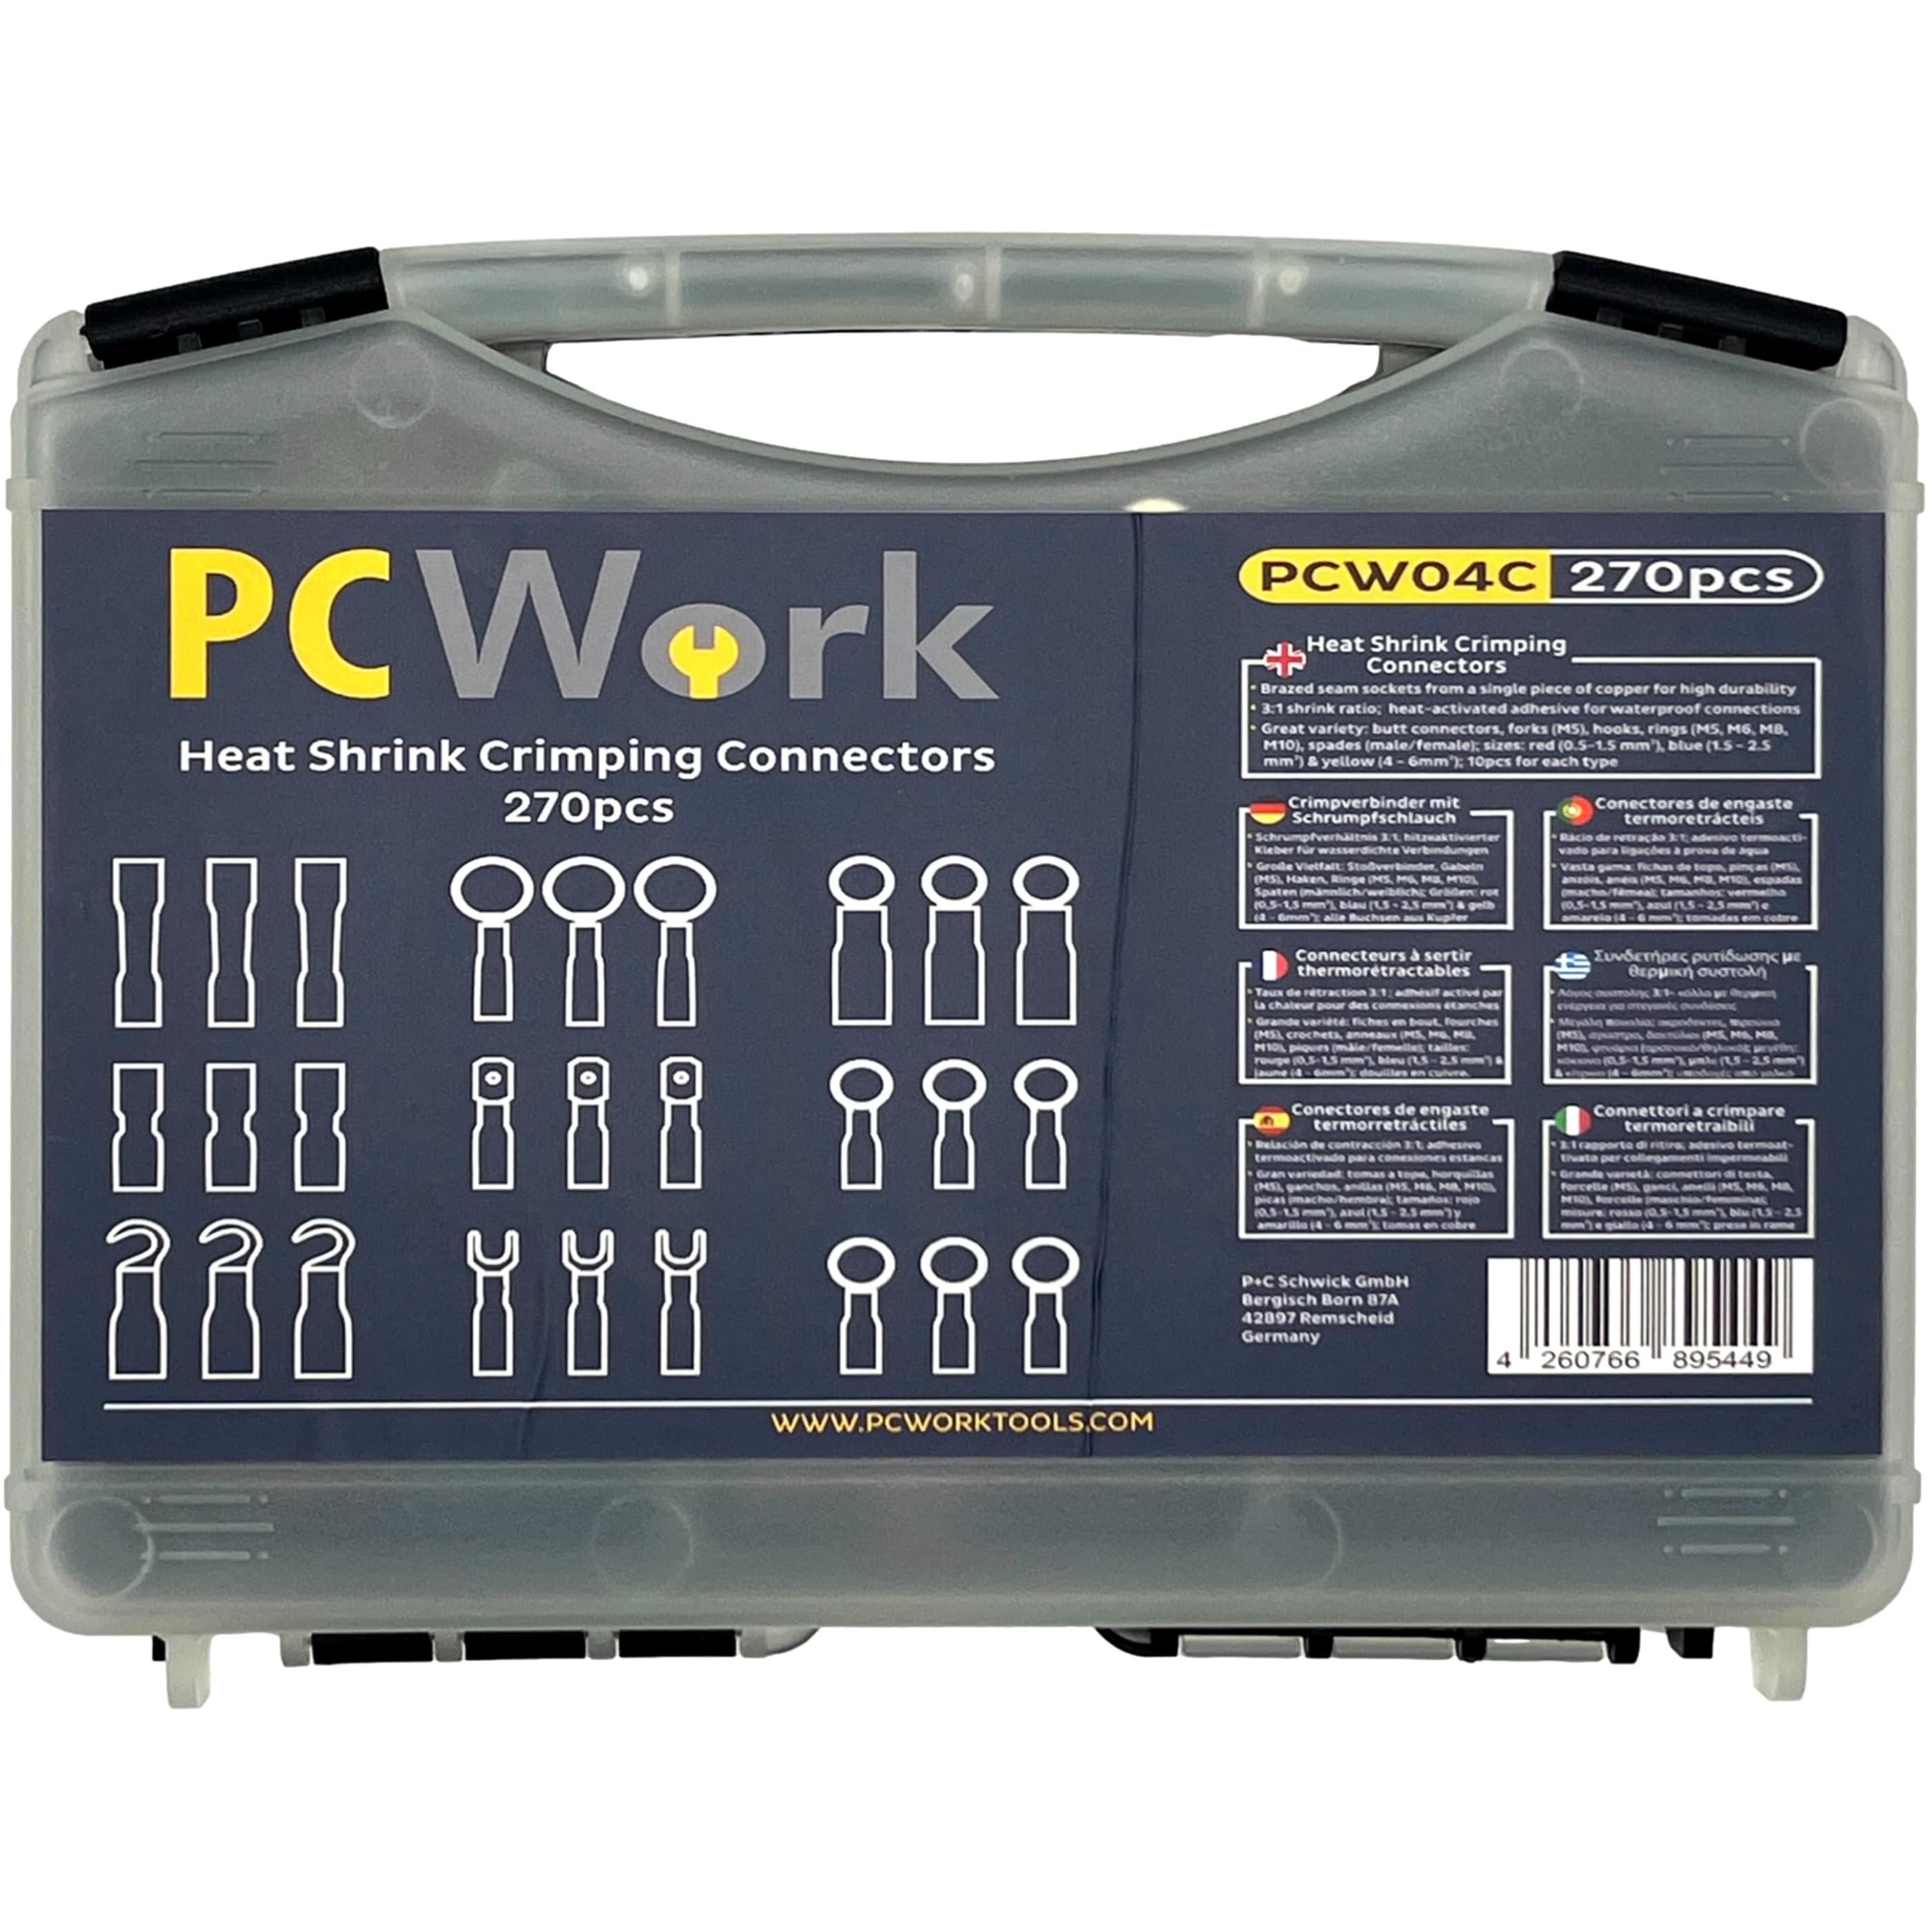 PCW04C Heat-Shrink Crimp Connector Set 270pcs